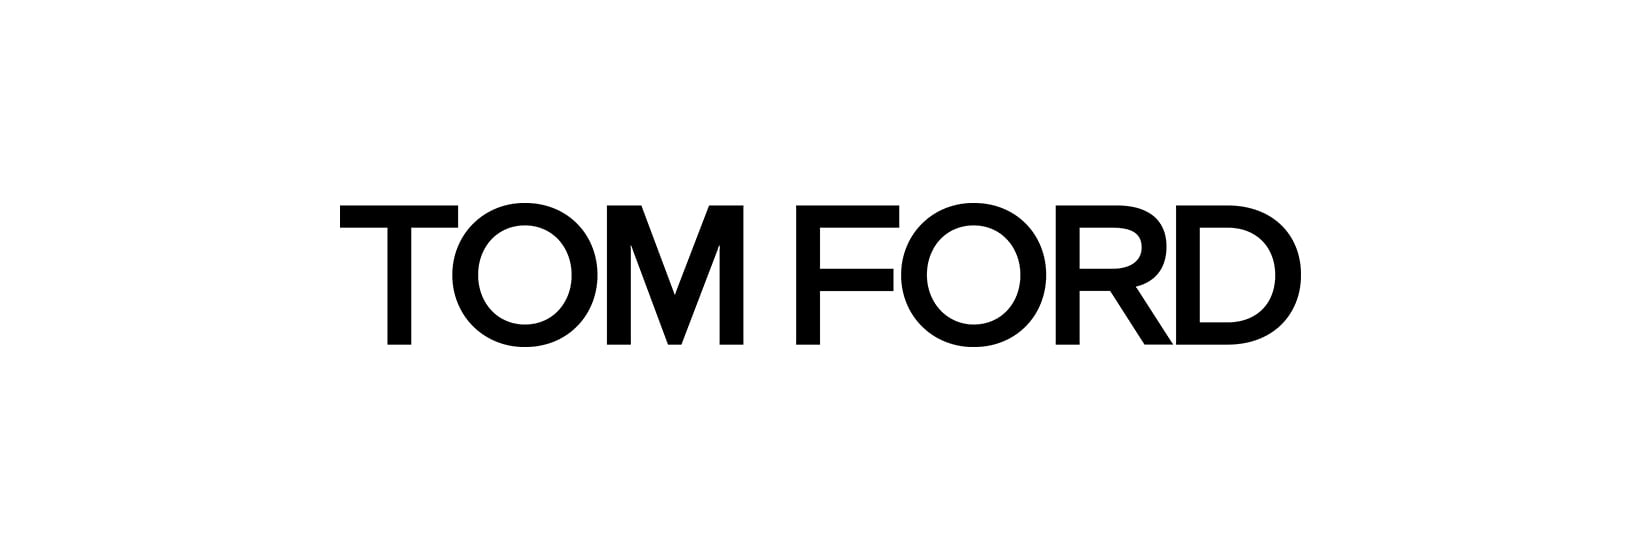 Tom Ford logo image